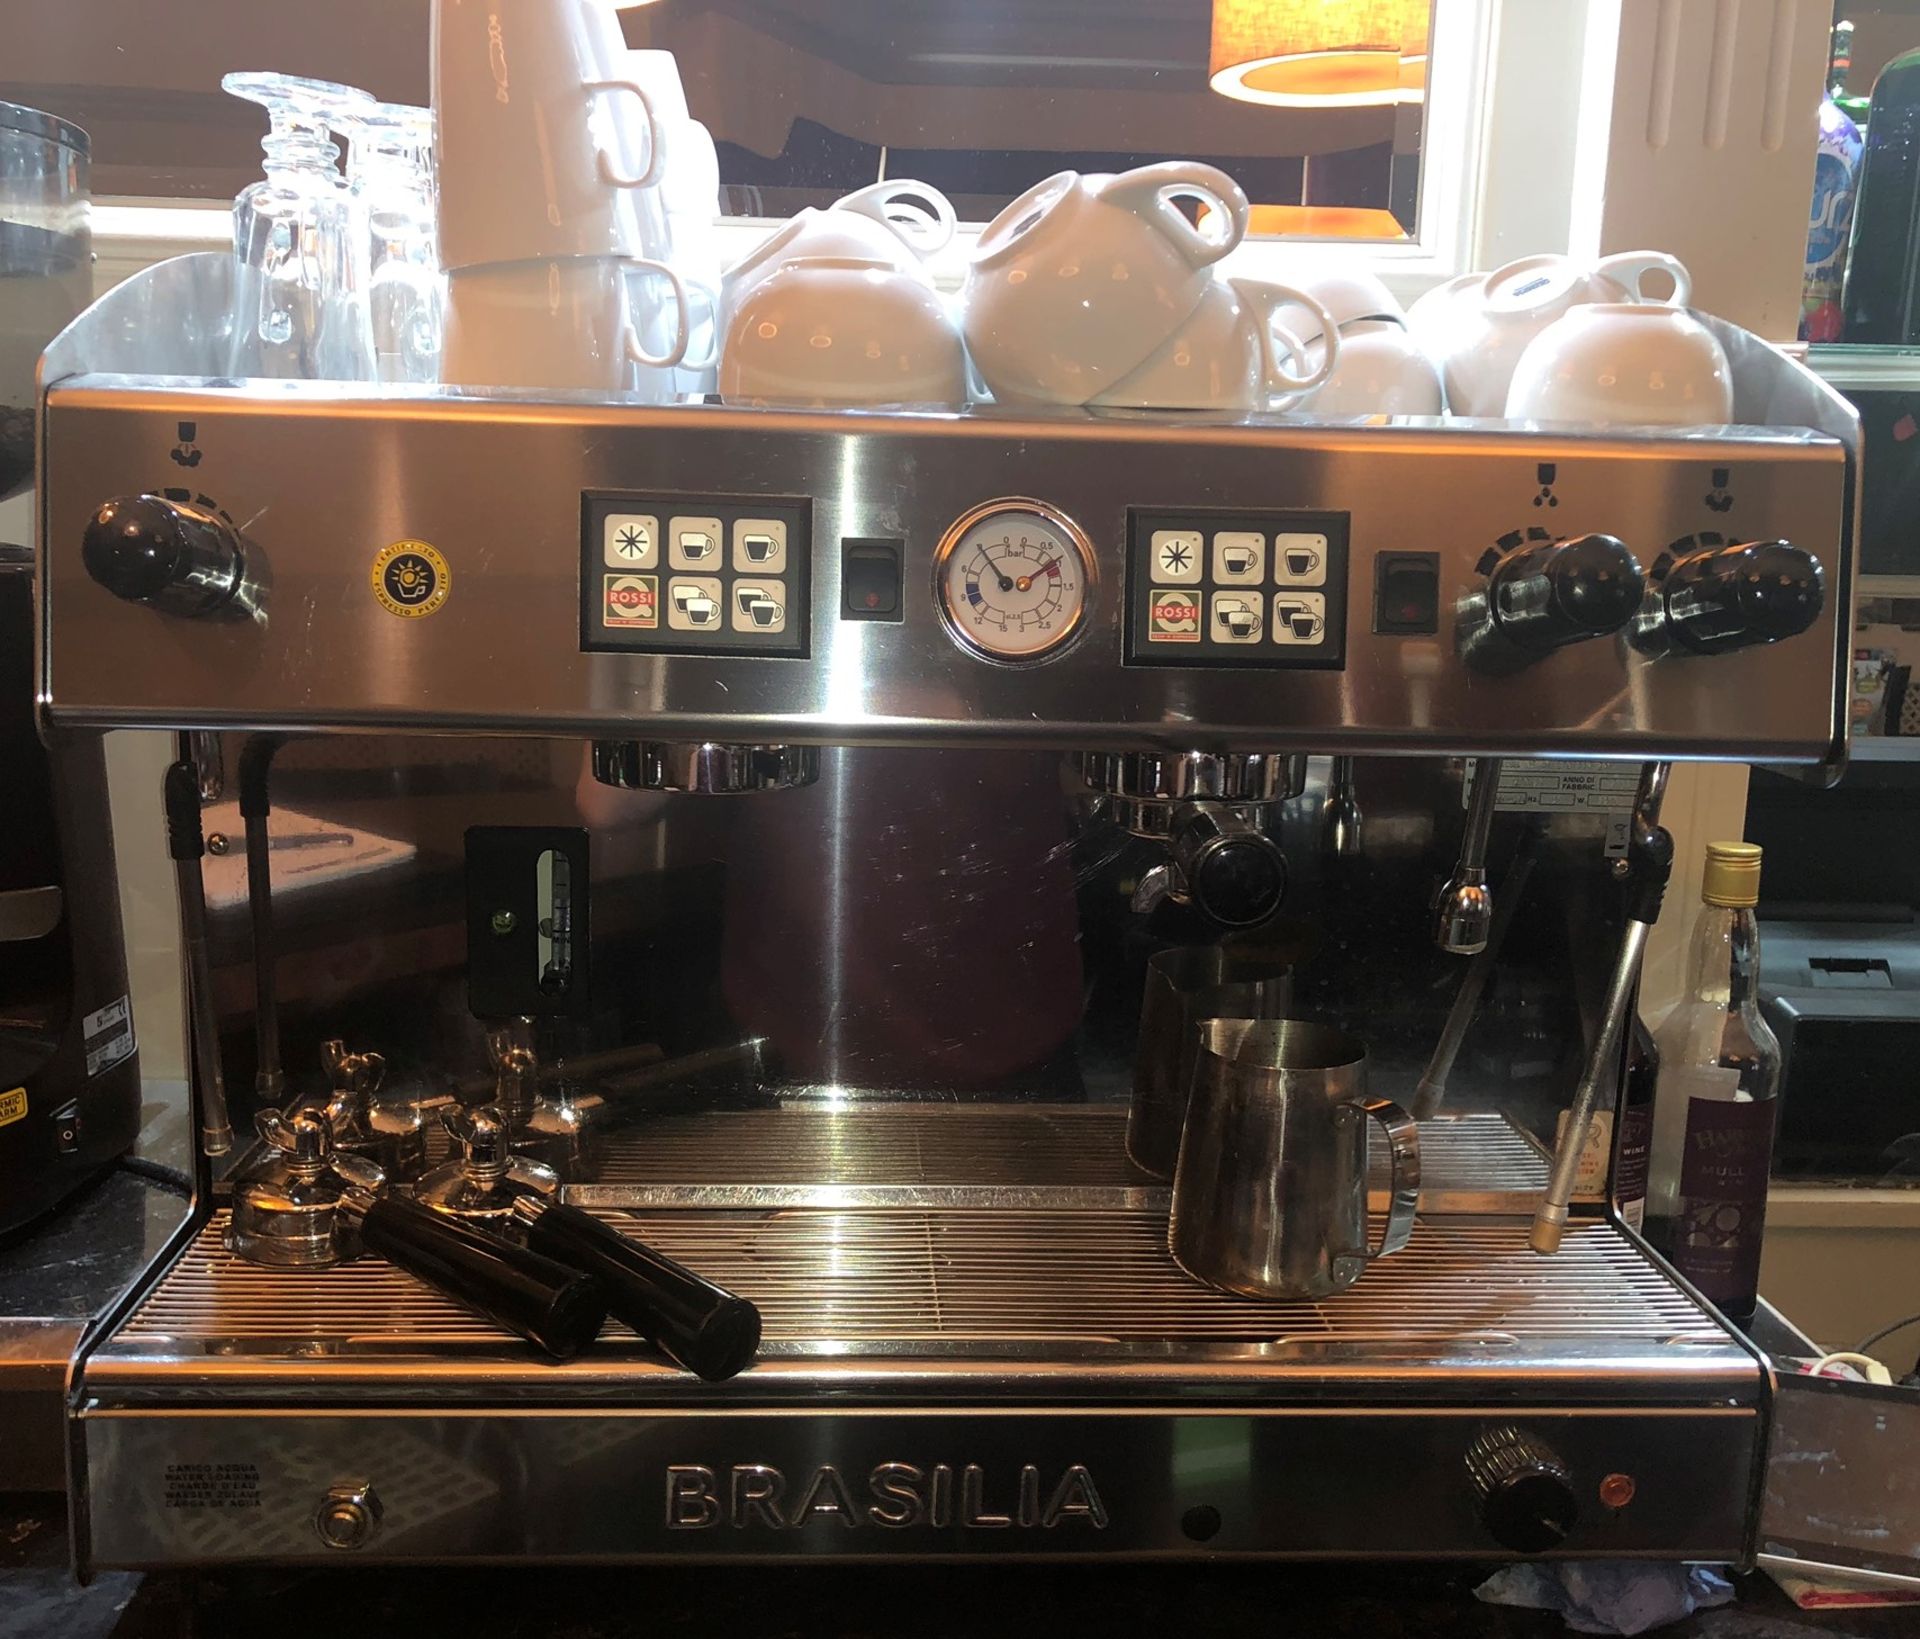 Brasilia Roma 05 2 Group Espresso Coffee Machine w/ Grinder